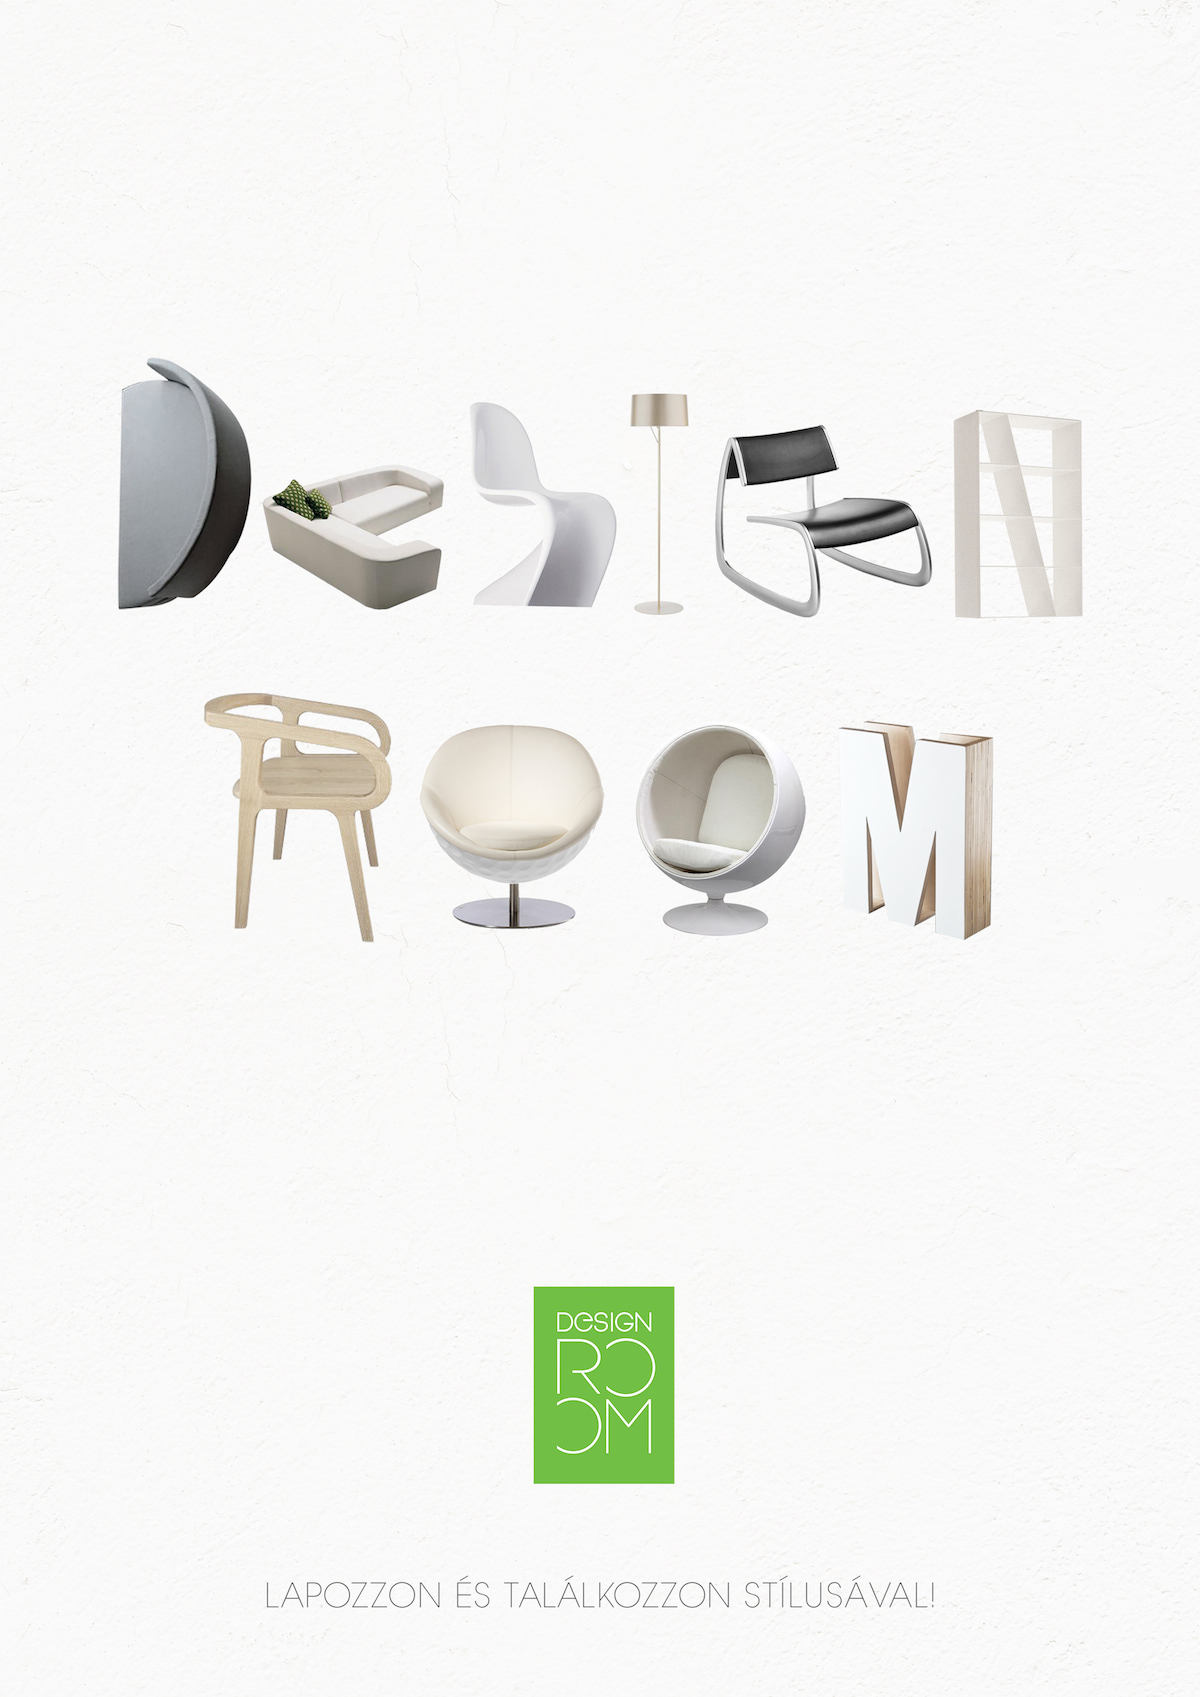 Interior magazine furniture design logo cover